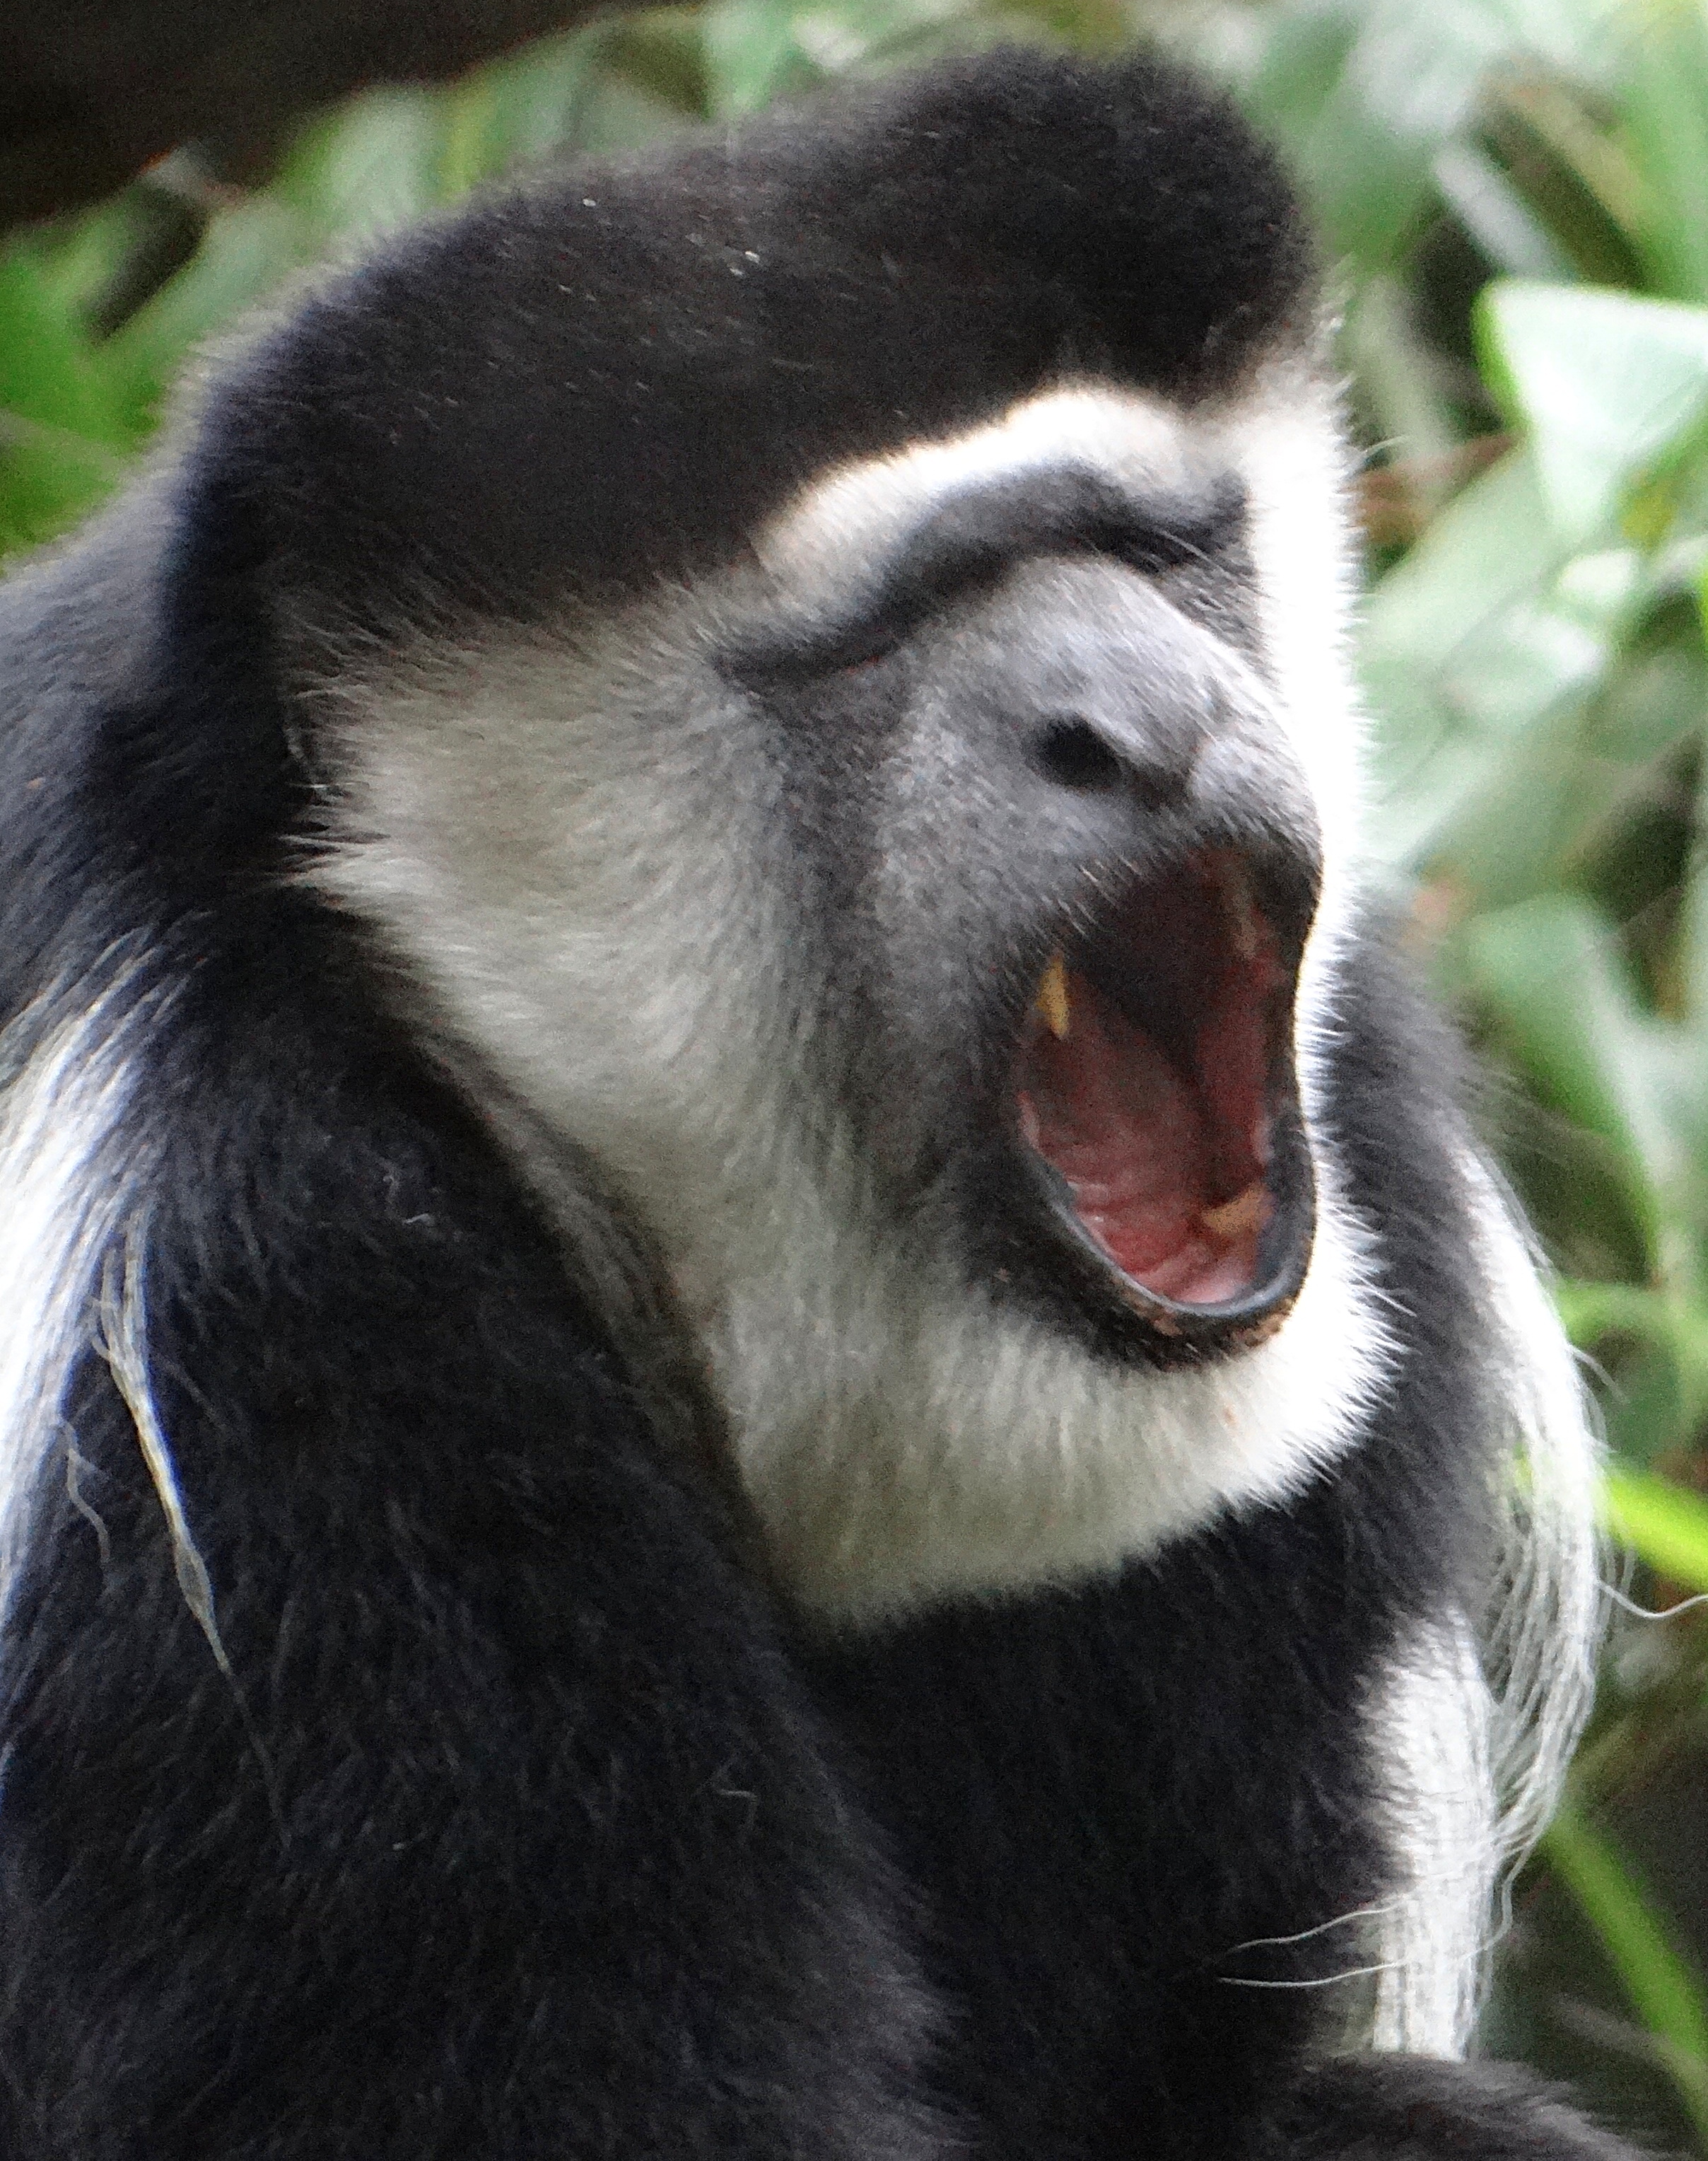 Colobus Monkey yawning, canine teeth